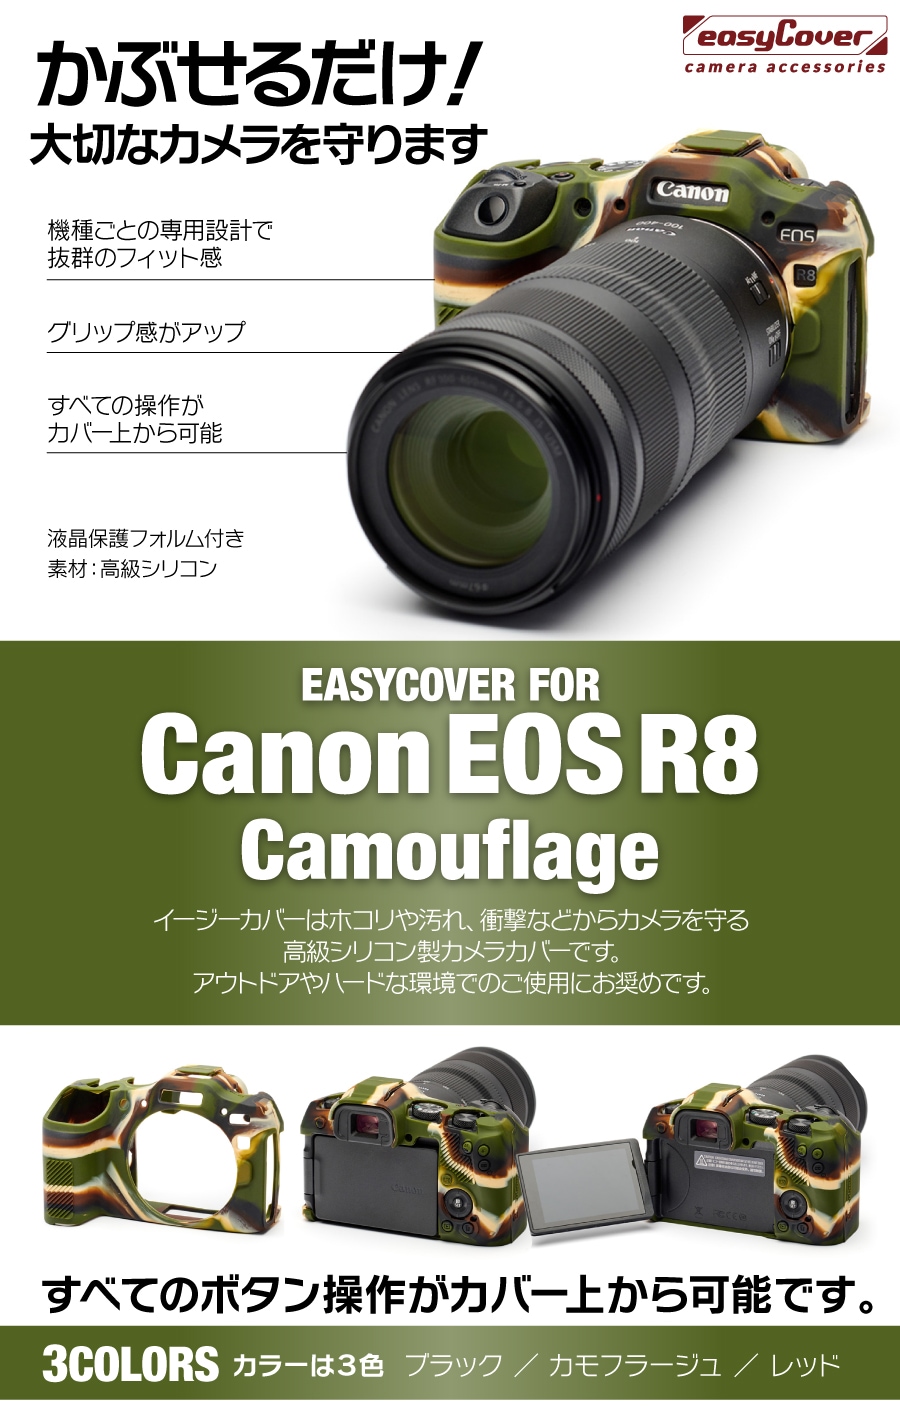 canon EOS R8用カモフラージュ